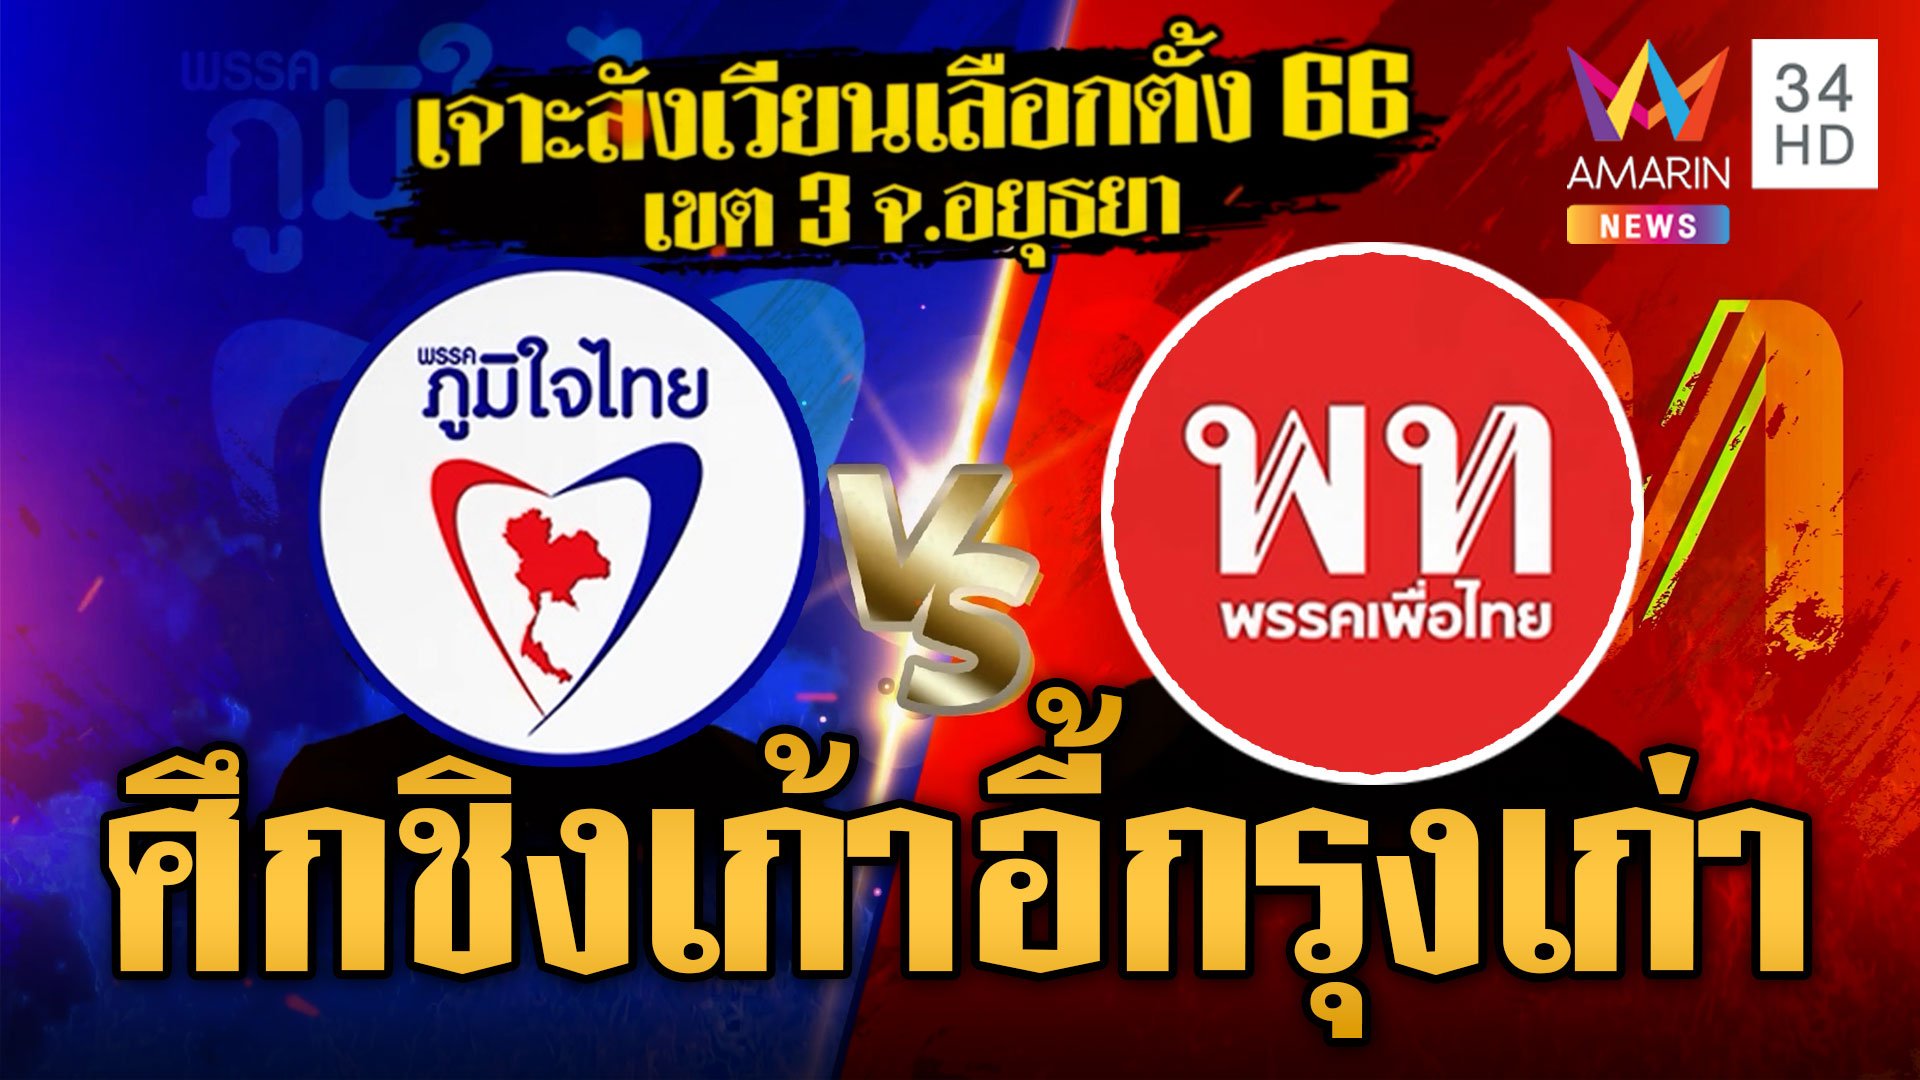 ศึกเลือกตั้ง3พรรคใหญ่ชักธงรบเมืองกรุงเก่า"ภูมิใจไทย-เพื่อไทย"ชิงเดือด | ข่าวเที่ยงอมรินทร์ | 11 พ.ค. 66 | AMARIN TVHD34